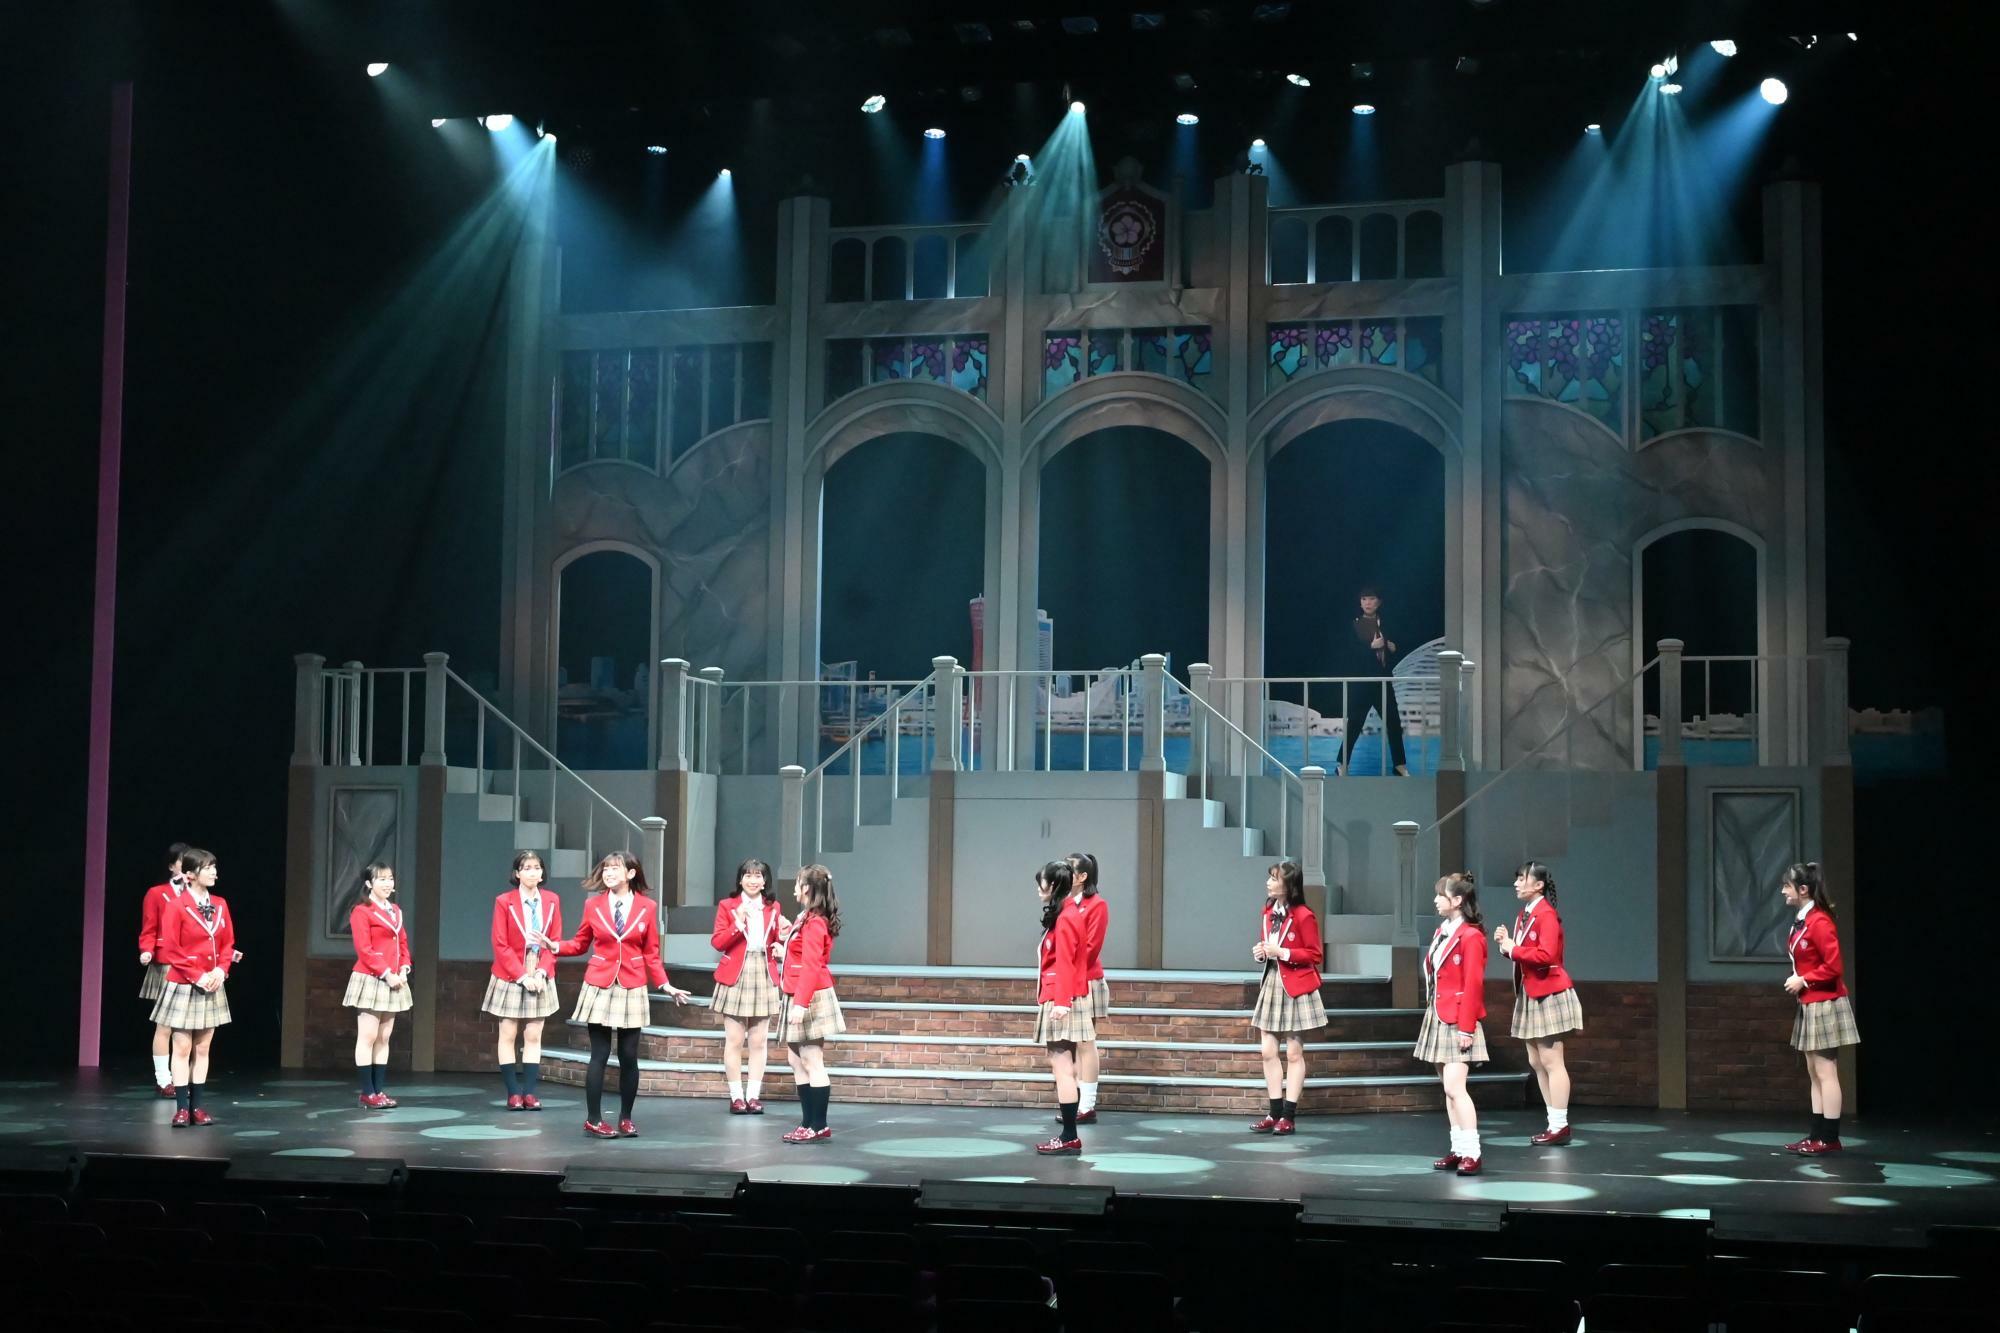 滝桜女学院高等学校を描いた楽曲「輝かしい未来」のシーン。背景も都度入れ替わる